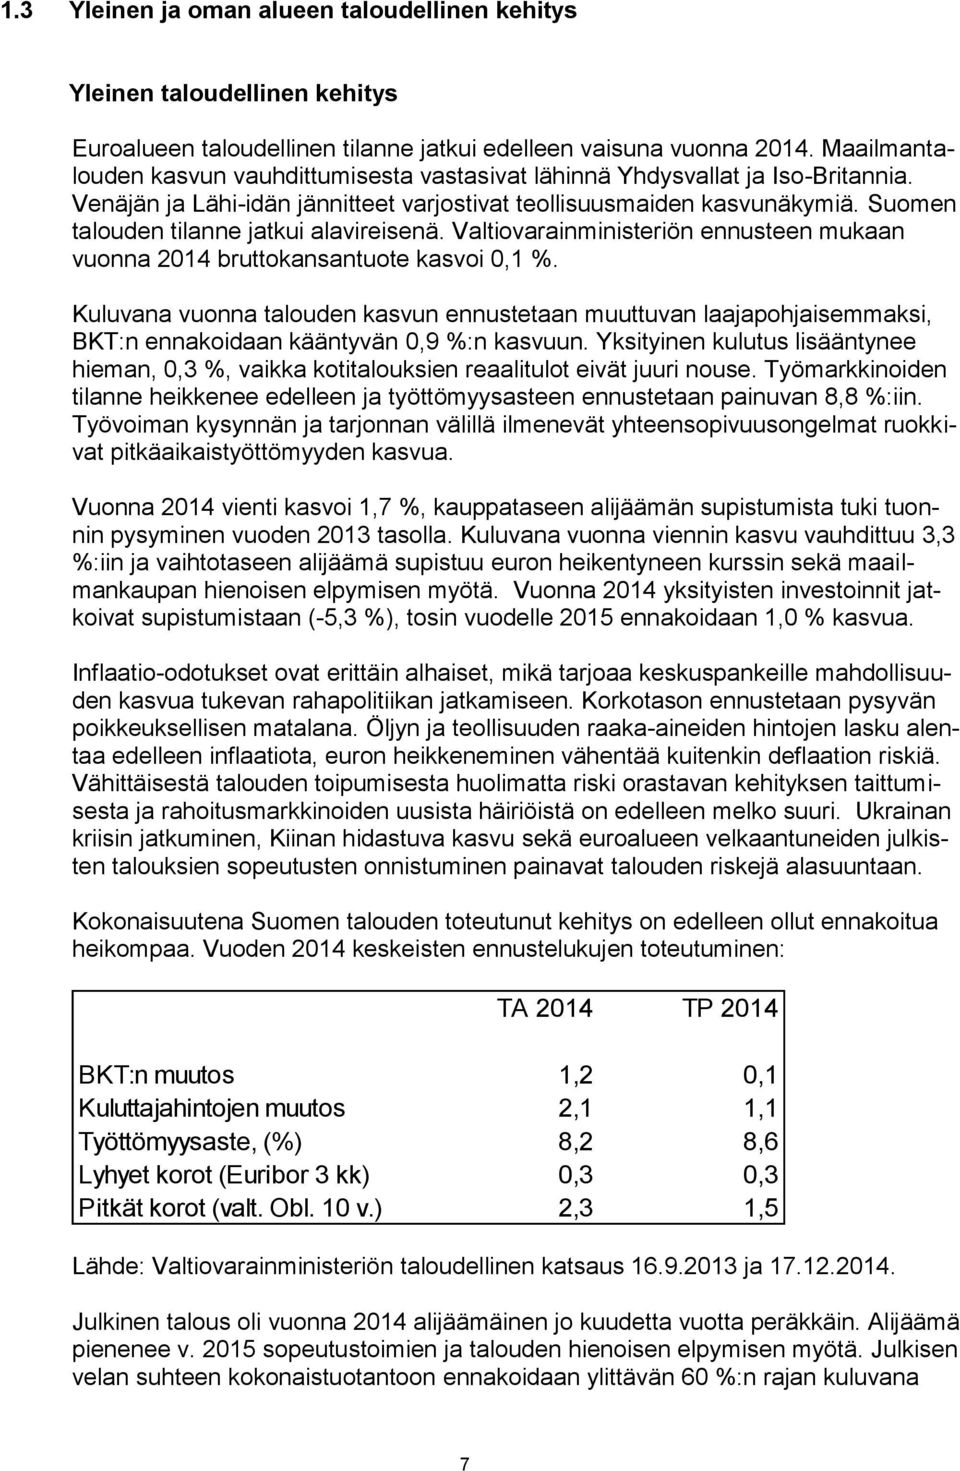 Suomen talouden tilanne jatkui alavireisenä. Valtiovarainministeriön ennusteen mukaan vuonna 2014 bruttokansantuote kasvoi 0,1 %.